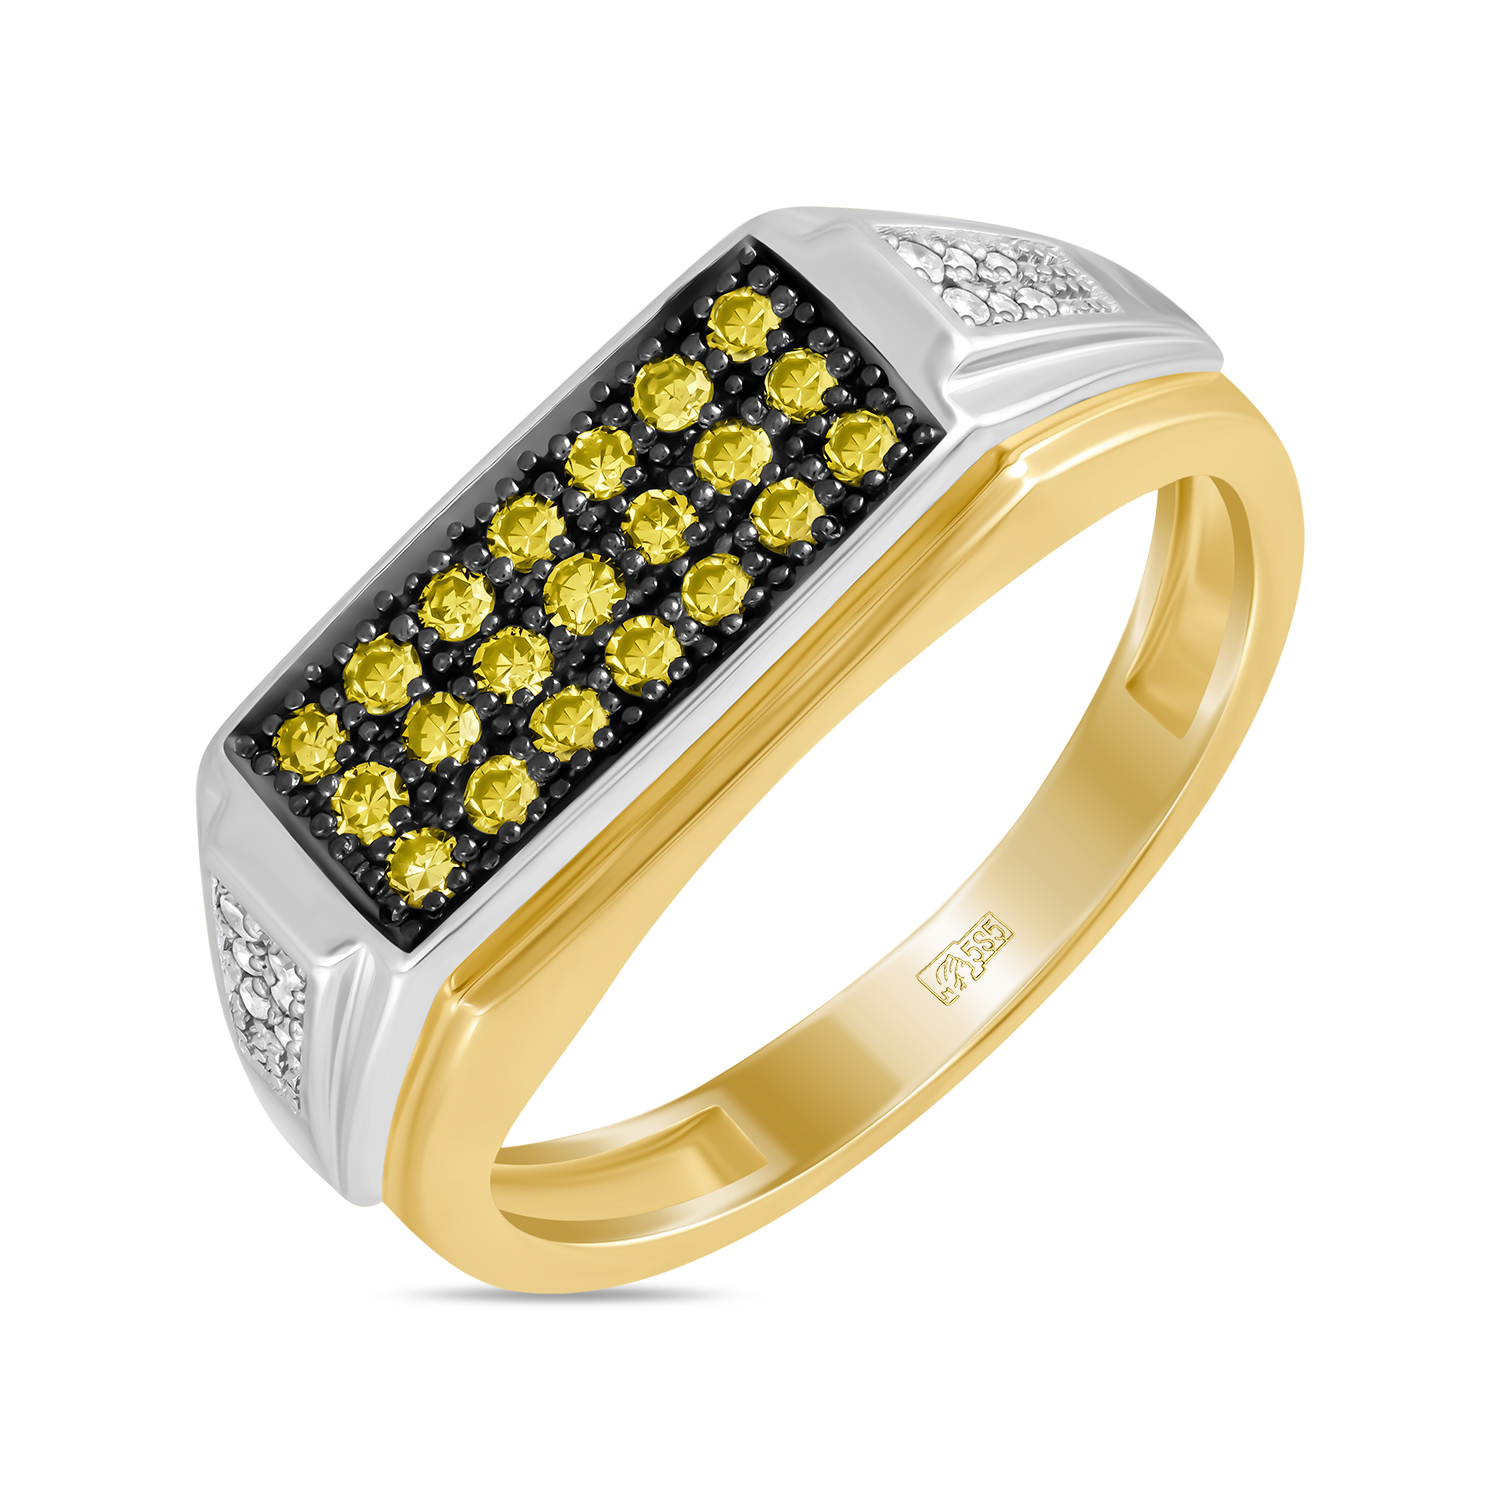 Кольца МЮЗ Золотое кольцо с бриллиантами и цветными бриллиантами кольца мюз золотое кольцо с топазом бриллиантами и цветными бриллиантами